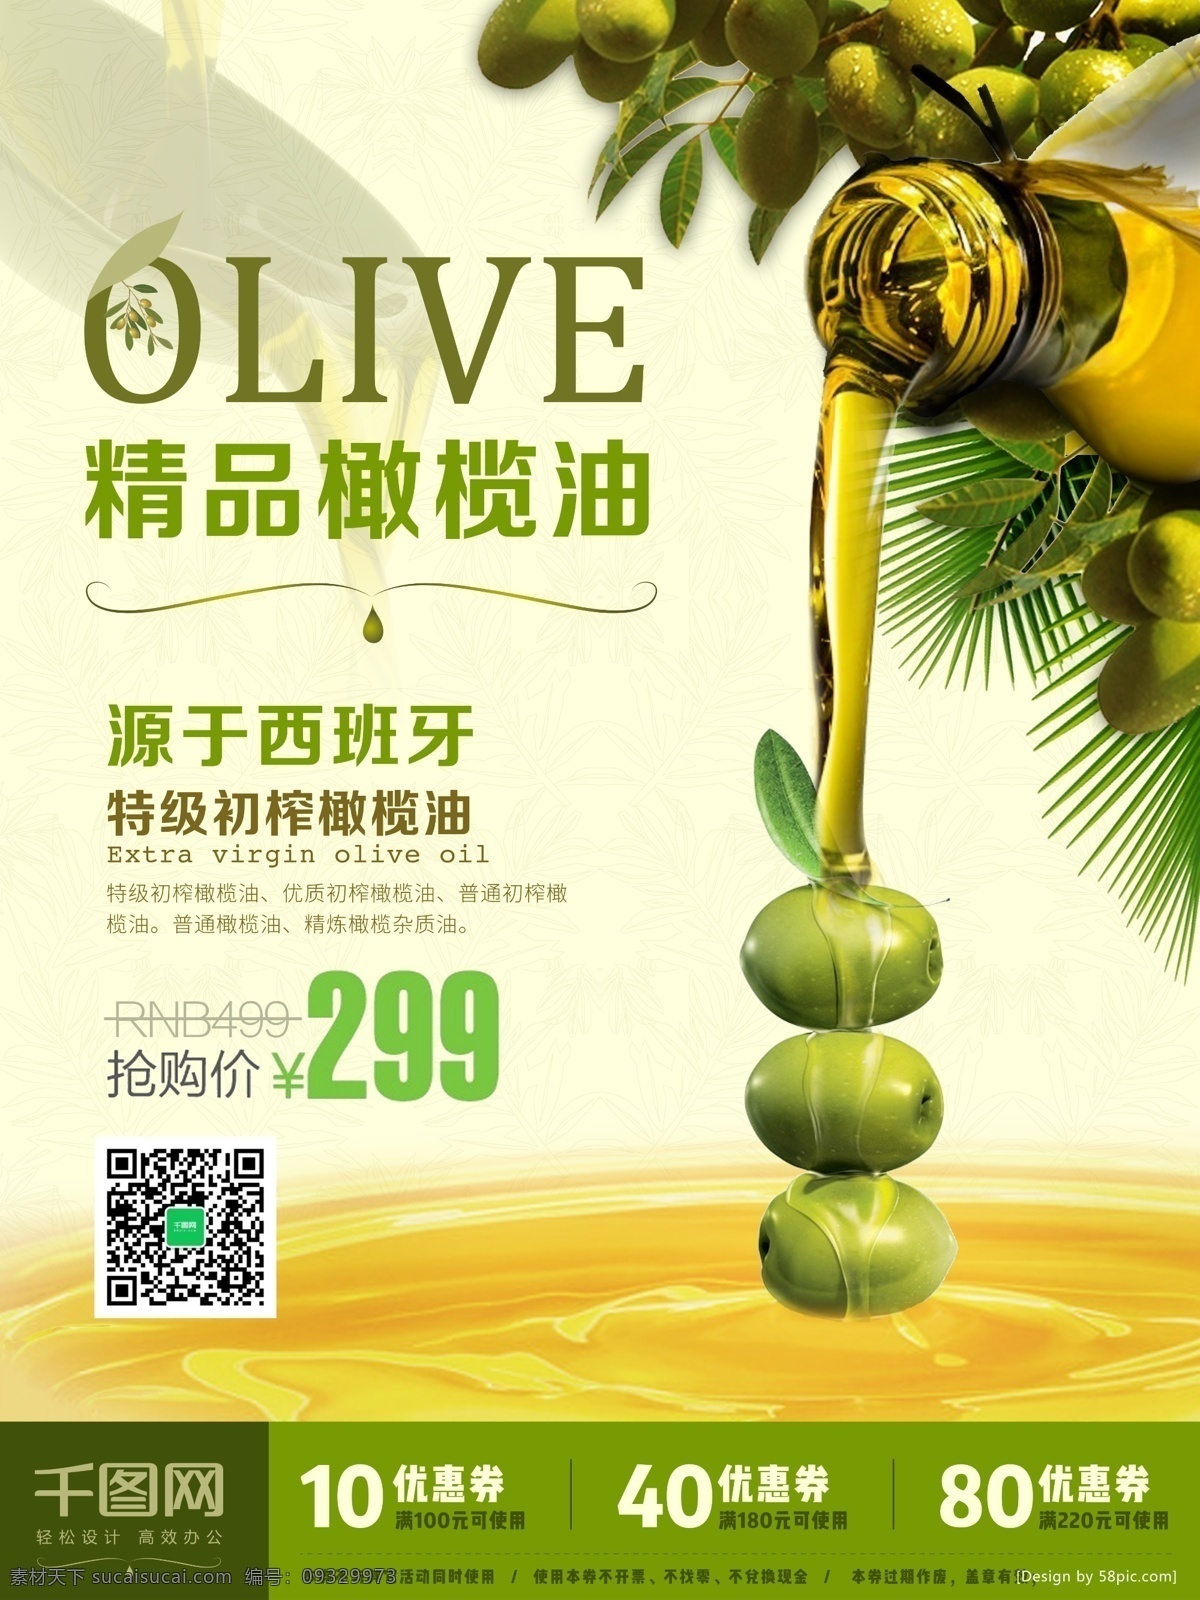 精品 橄榄油 促销 精品橄榄油 橄榄油海报 日用品海报 促销海报 特价 优惠 橄榄 优惠券 psd素材